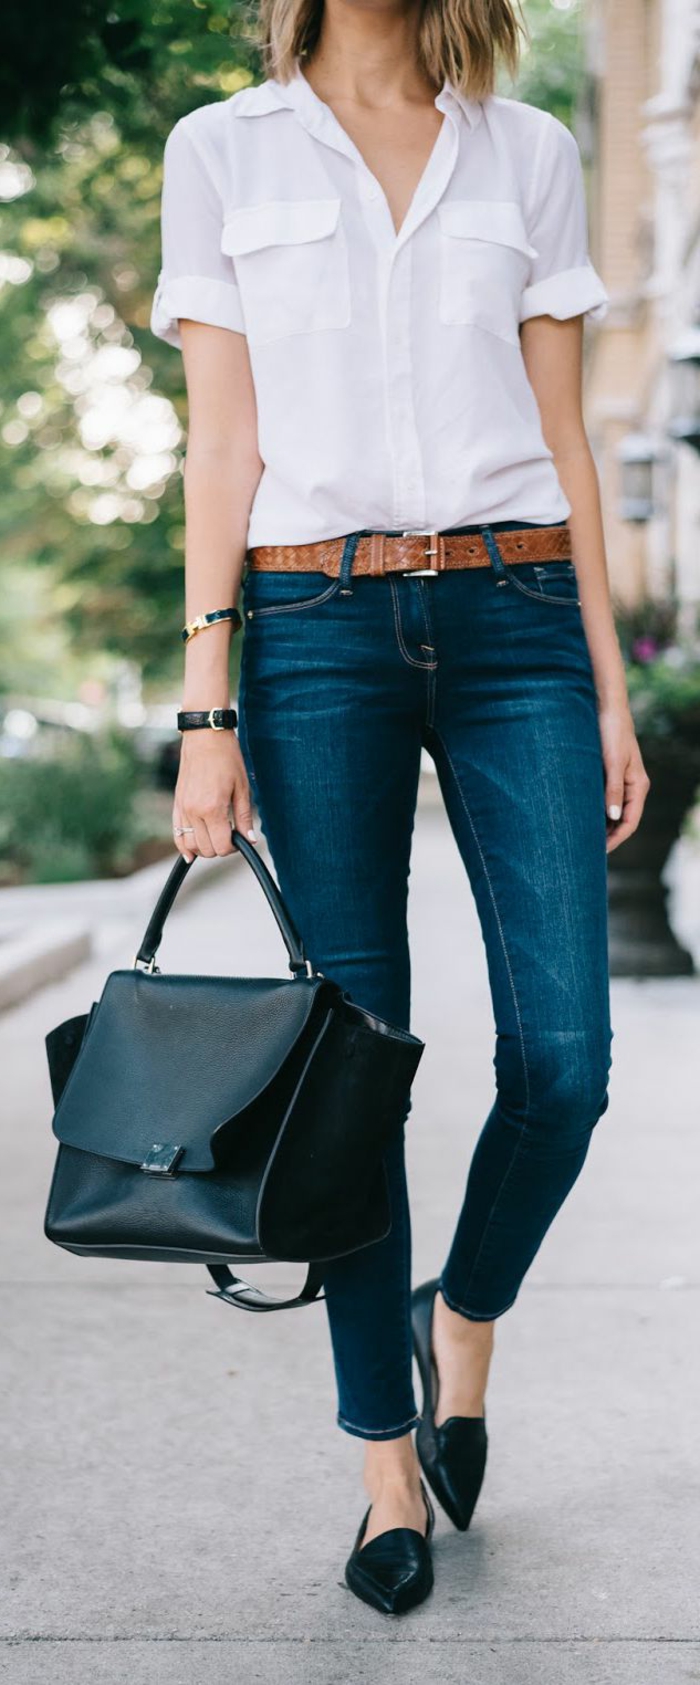 gehobene freizeitkleidung jeans mit braunem gürtel weißes hemd schwarze schuhe tasche frau